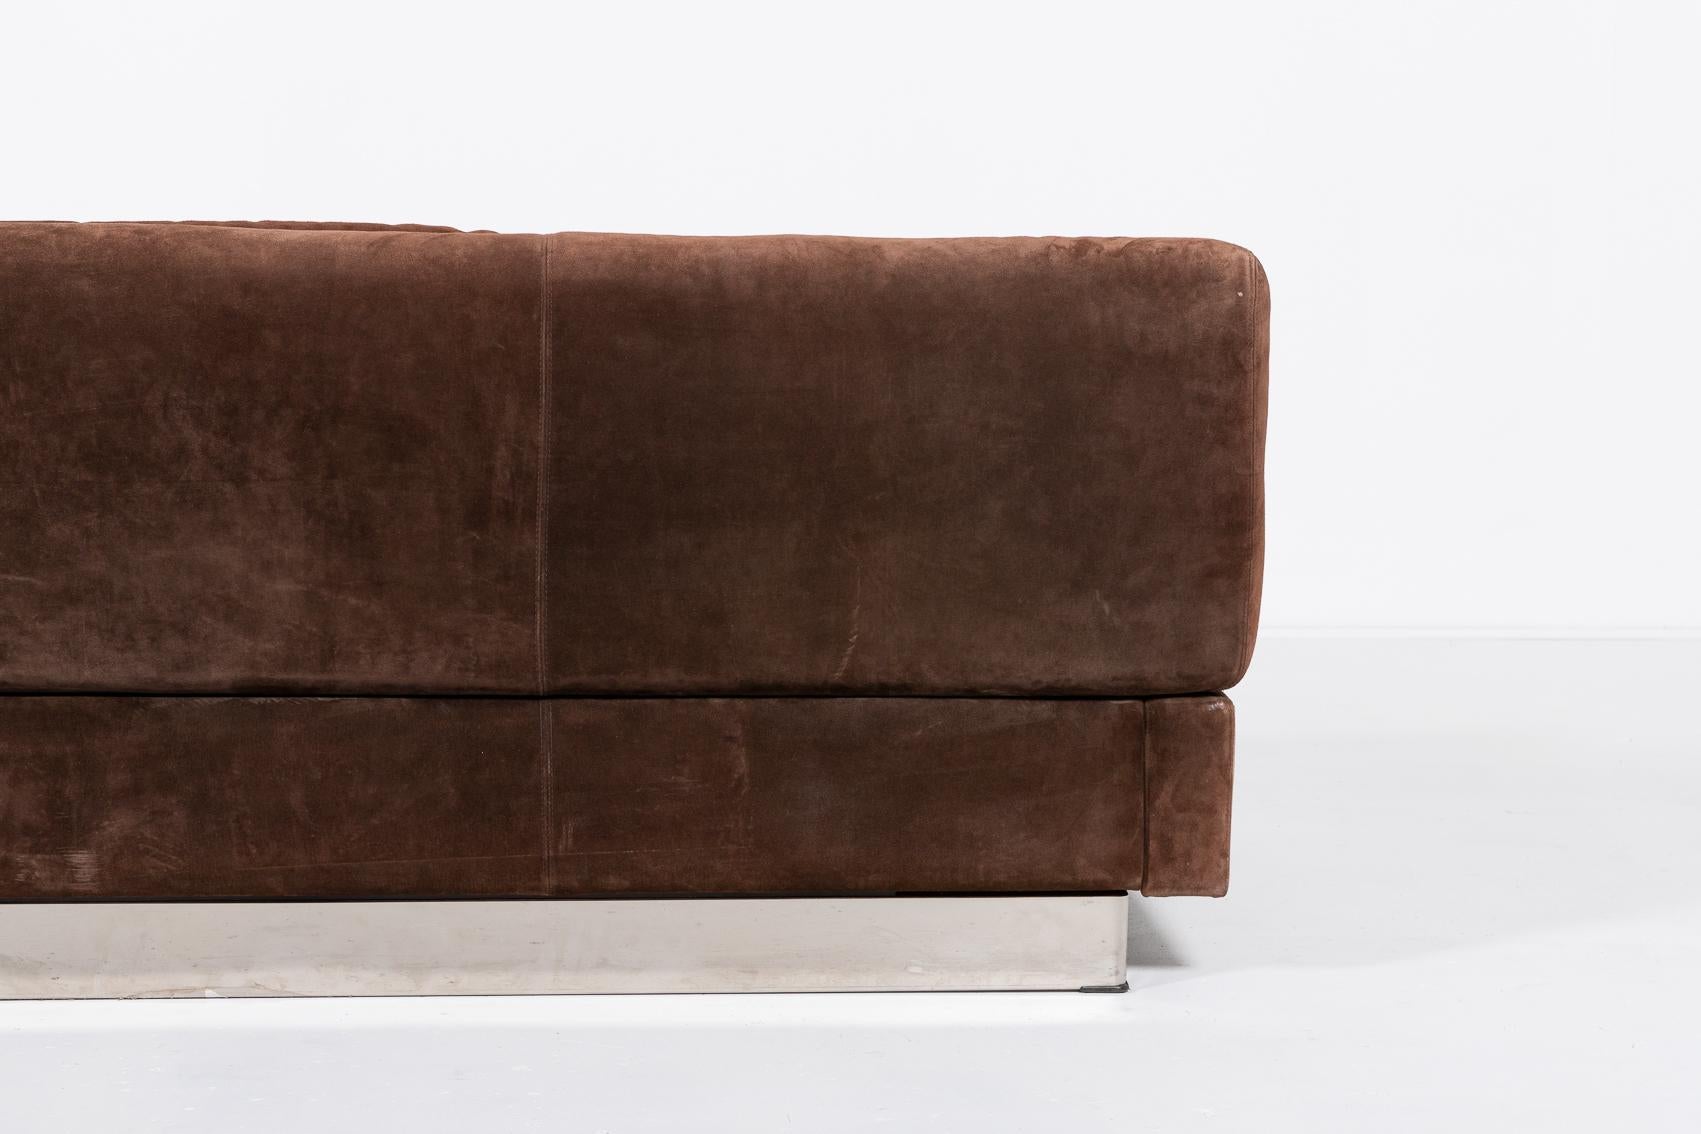 Suede Giovanni Offredi for Saporiti suede sofa, Italy 1970’s For Sale